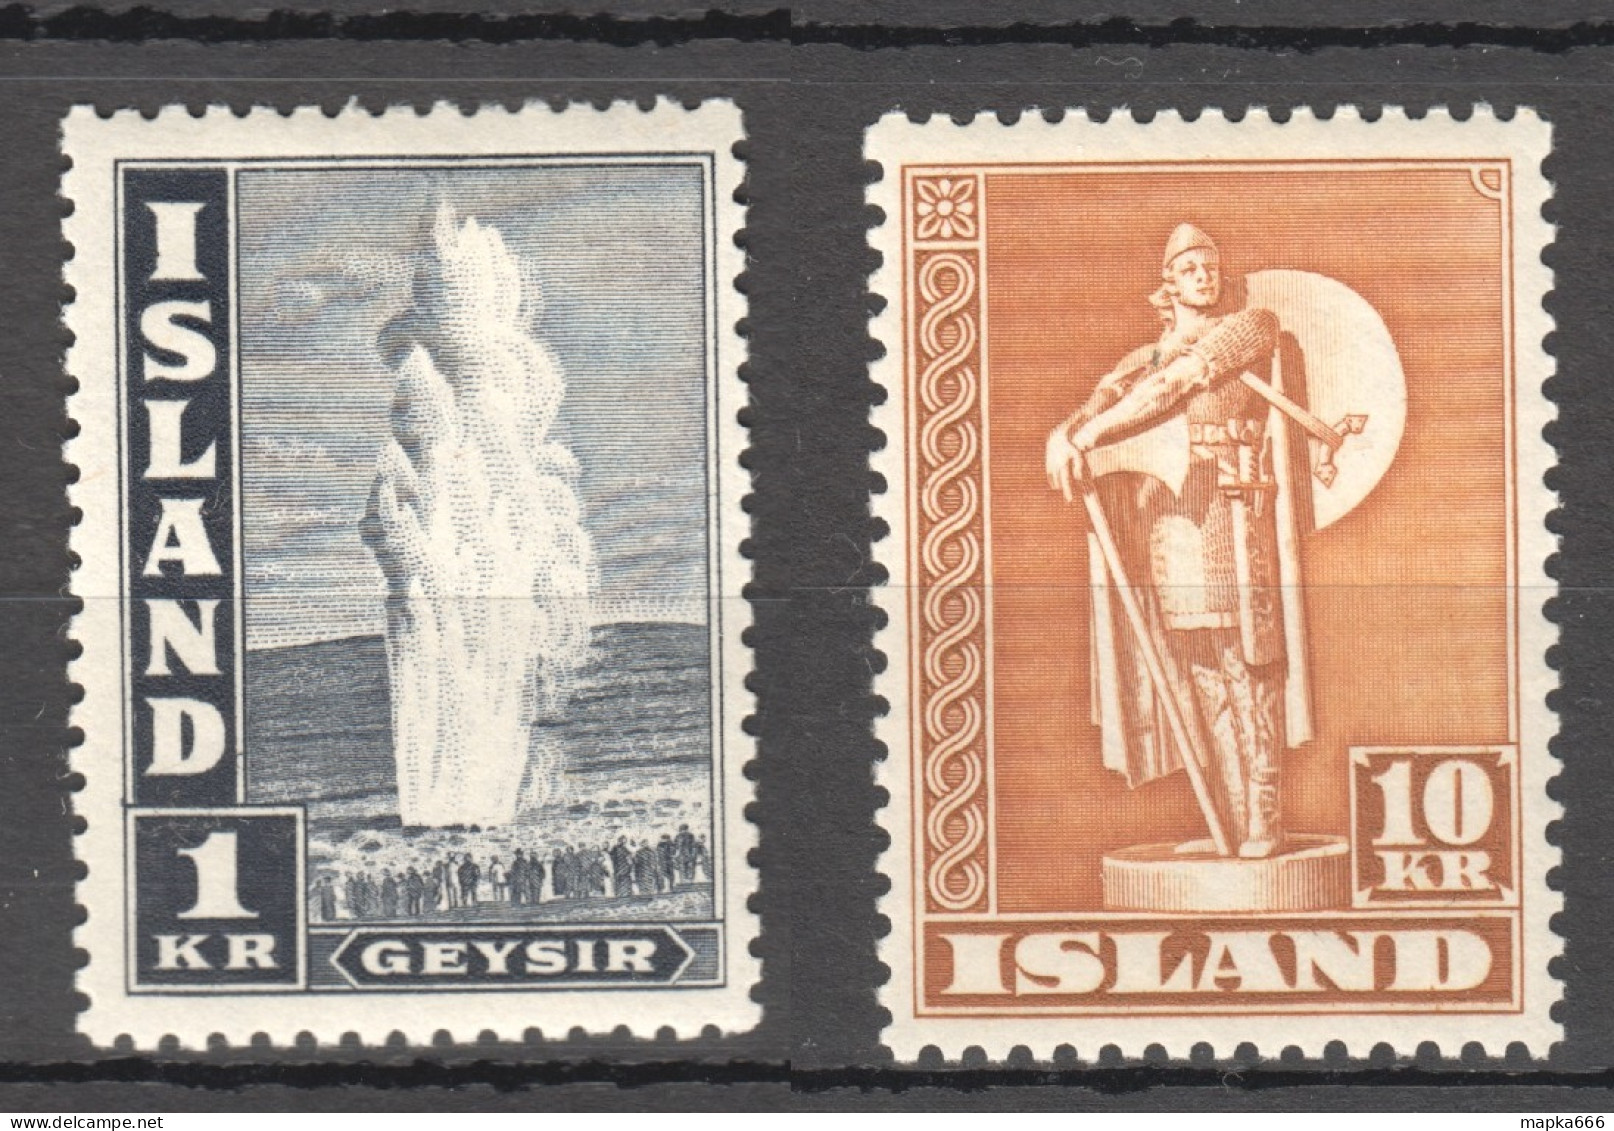 Sp667-668 1945 Iceland Geyser Statue Michel #239-40C 26 Euro 2St Mnh,Lh - Nuovi